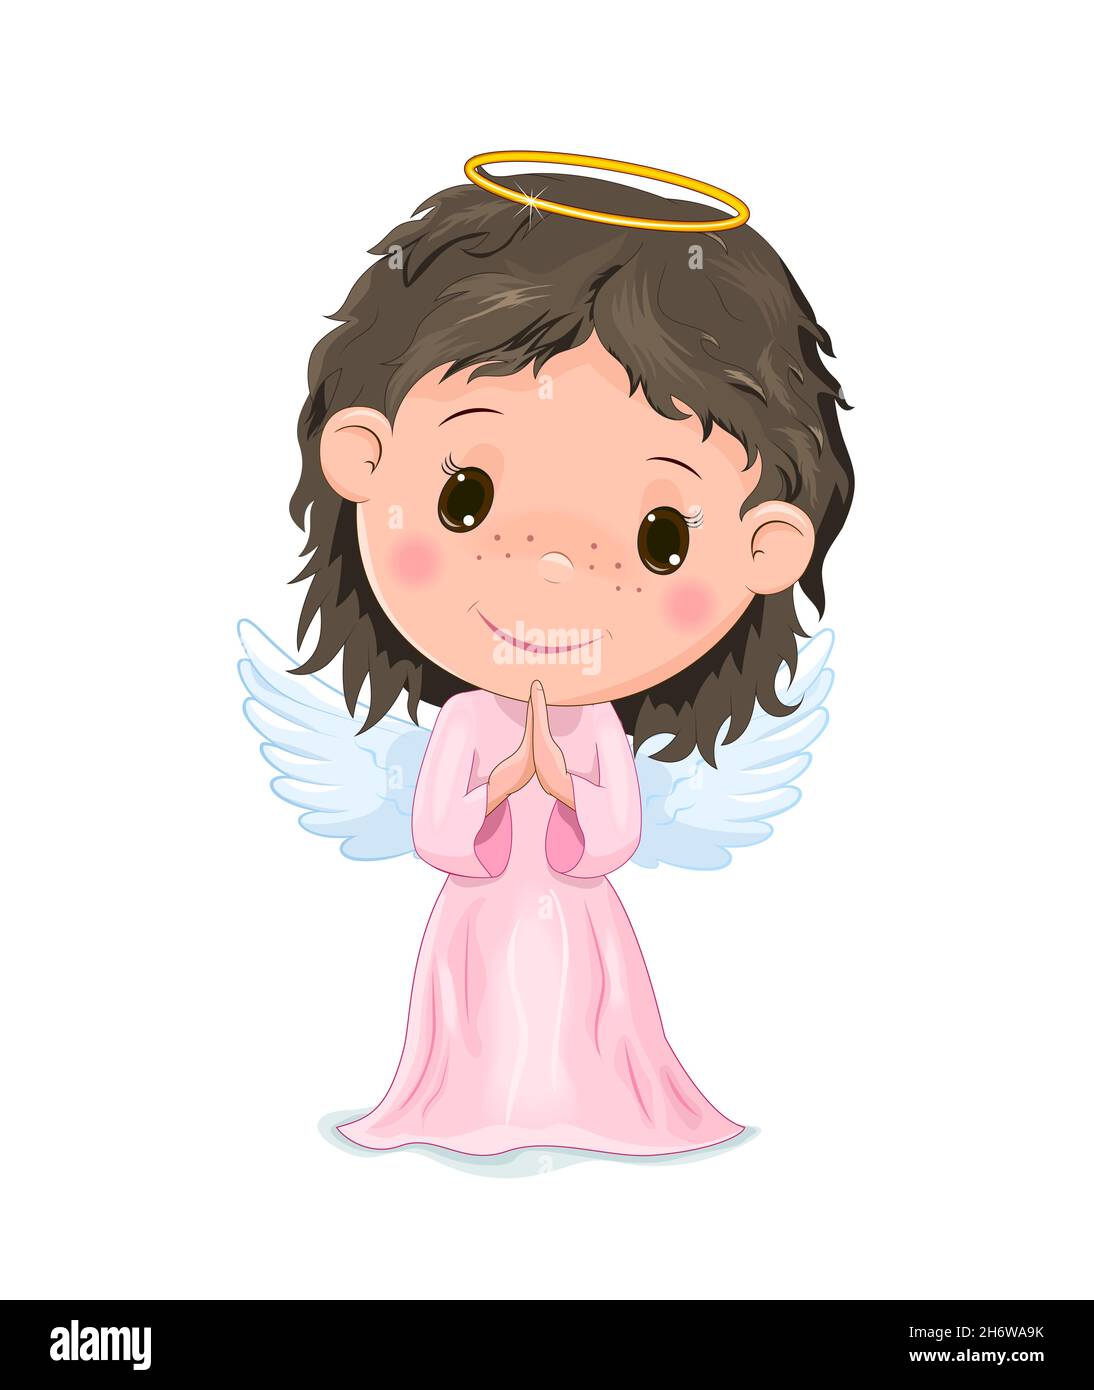 Dessin animé ange enfant dans une robe rose sur un fond blanc. Illustration de Vecteur